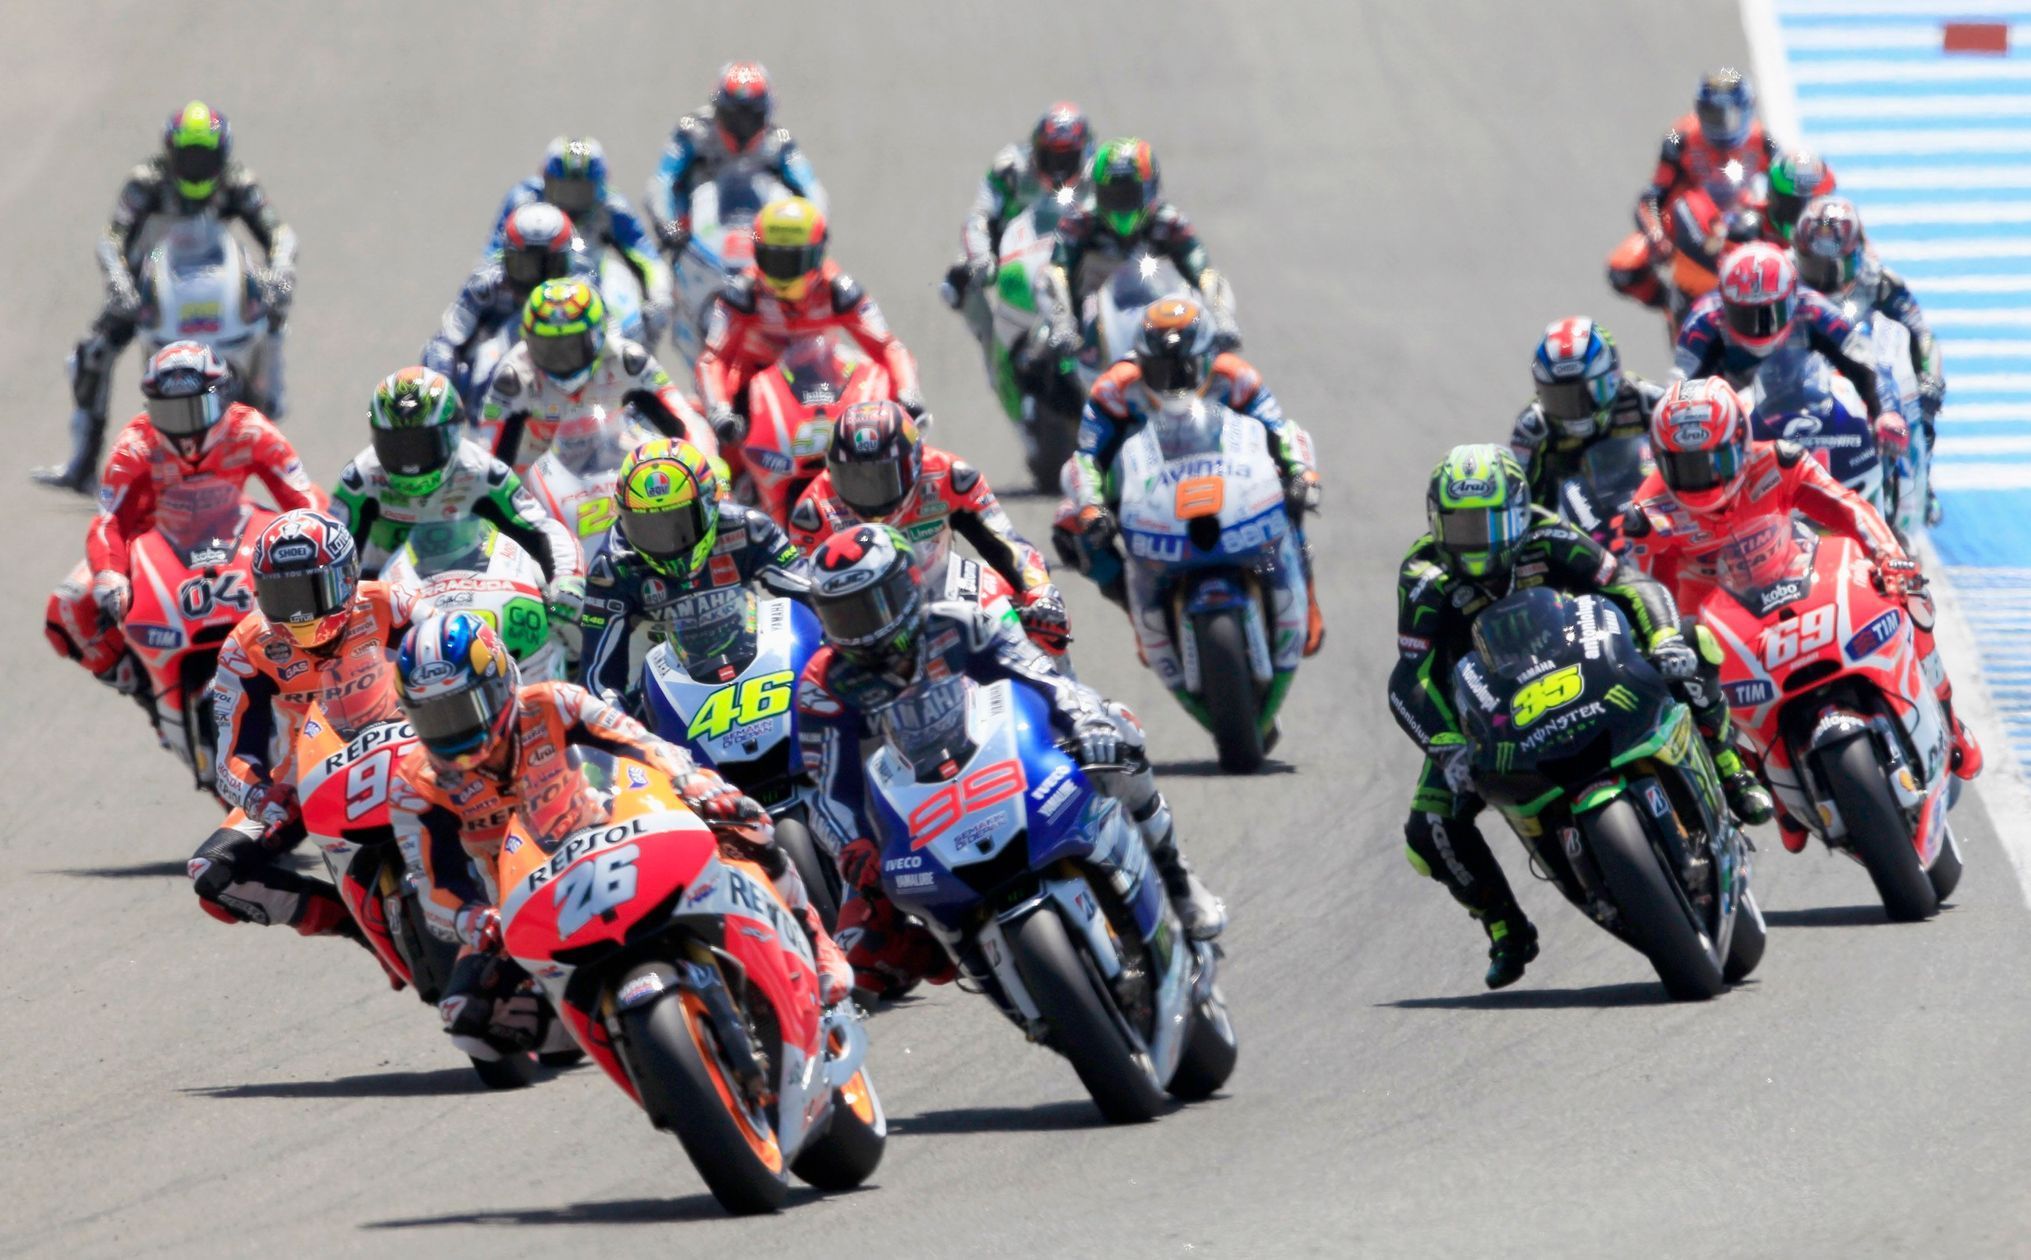 VC Španělska 2013, MotoGP: start